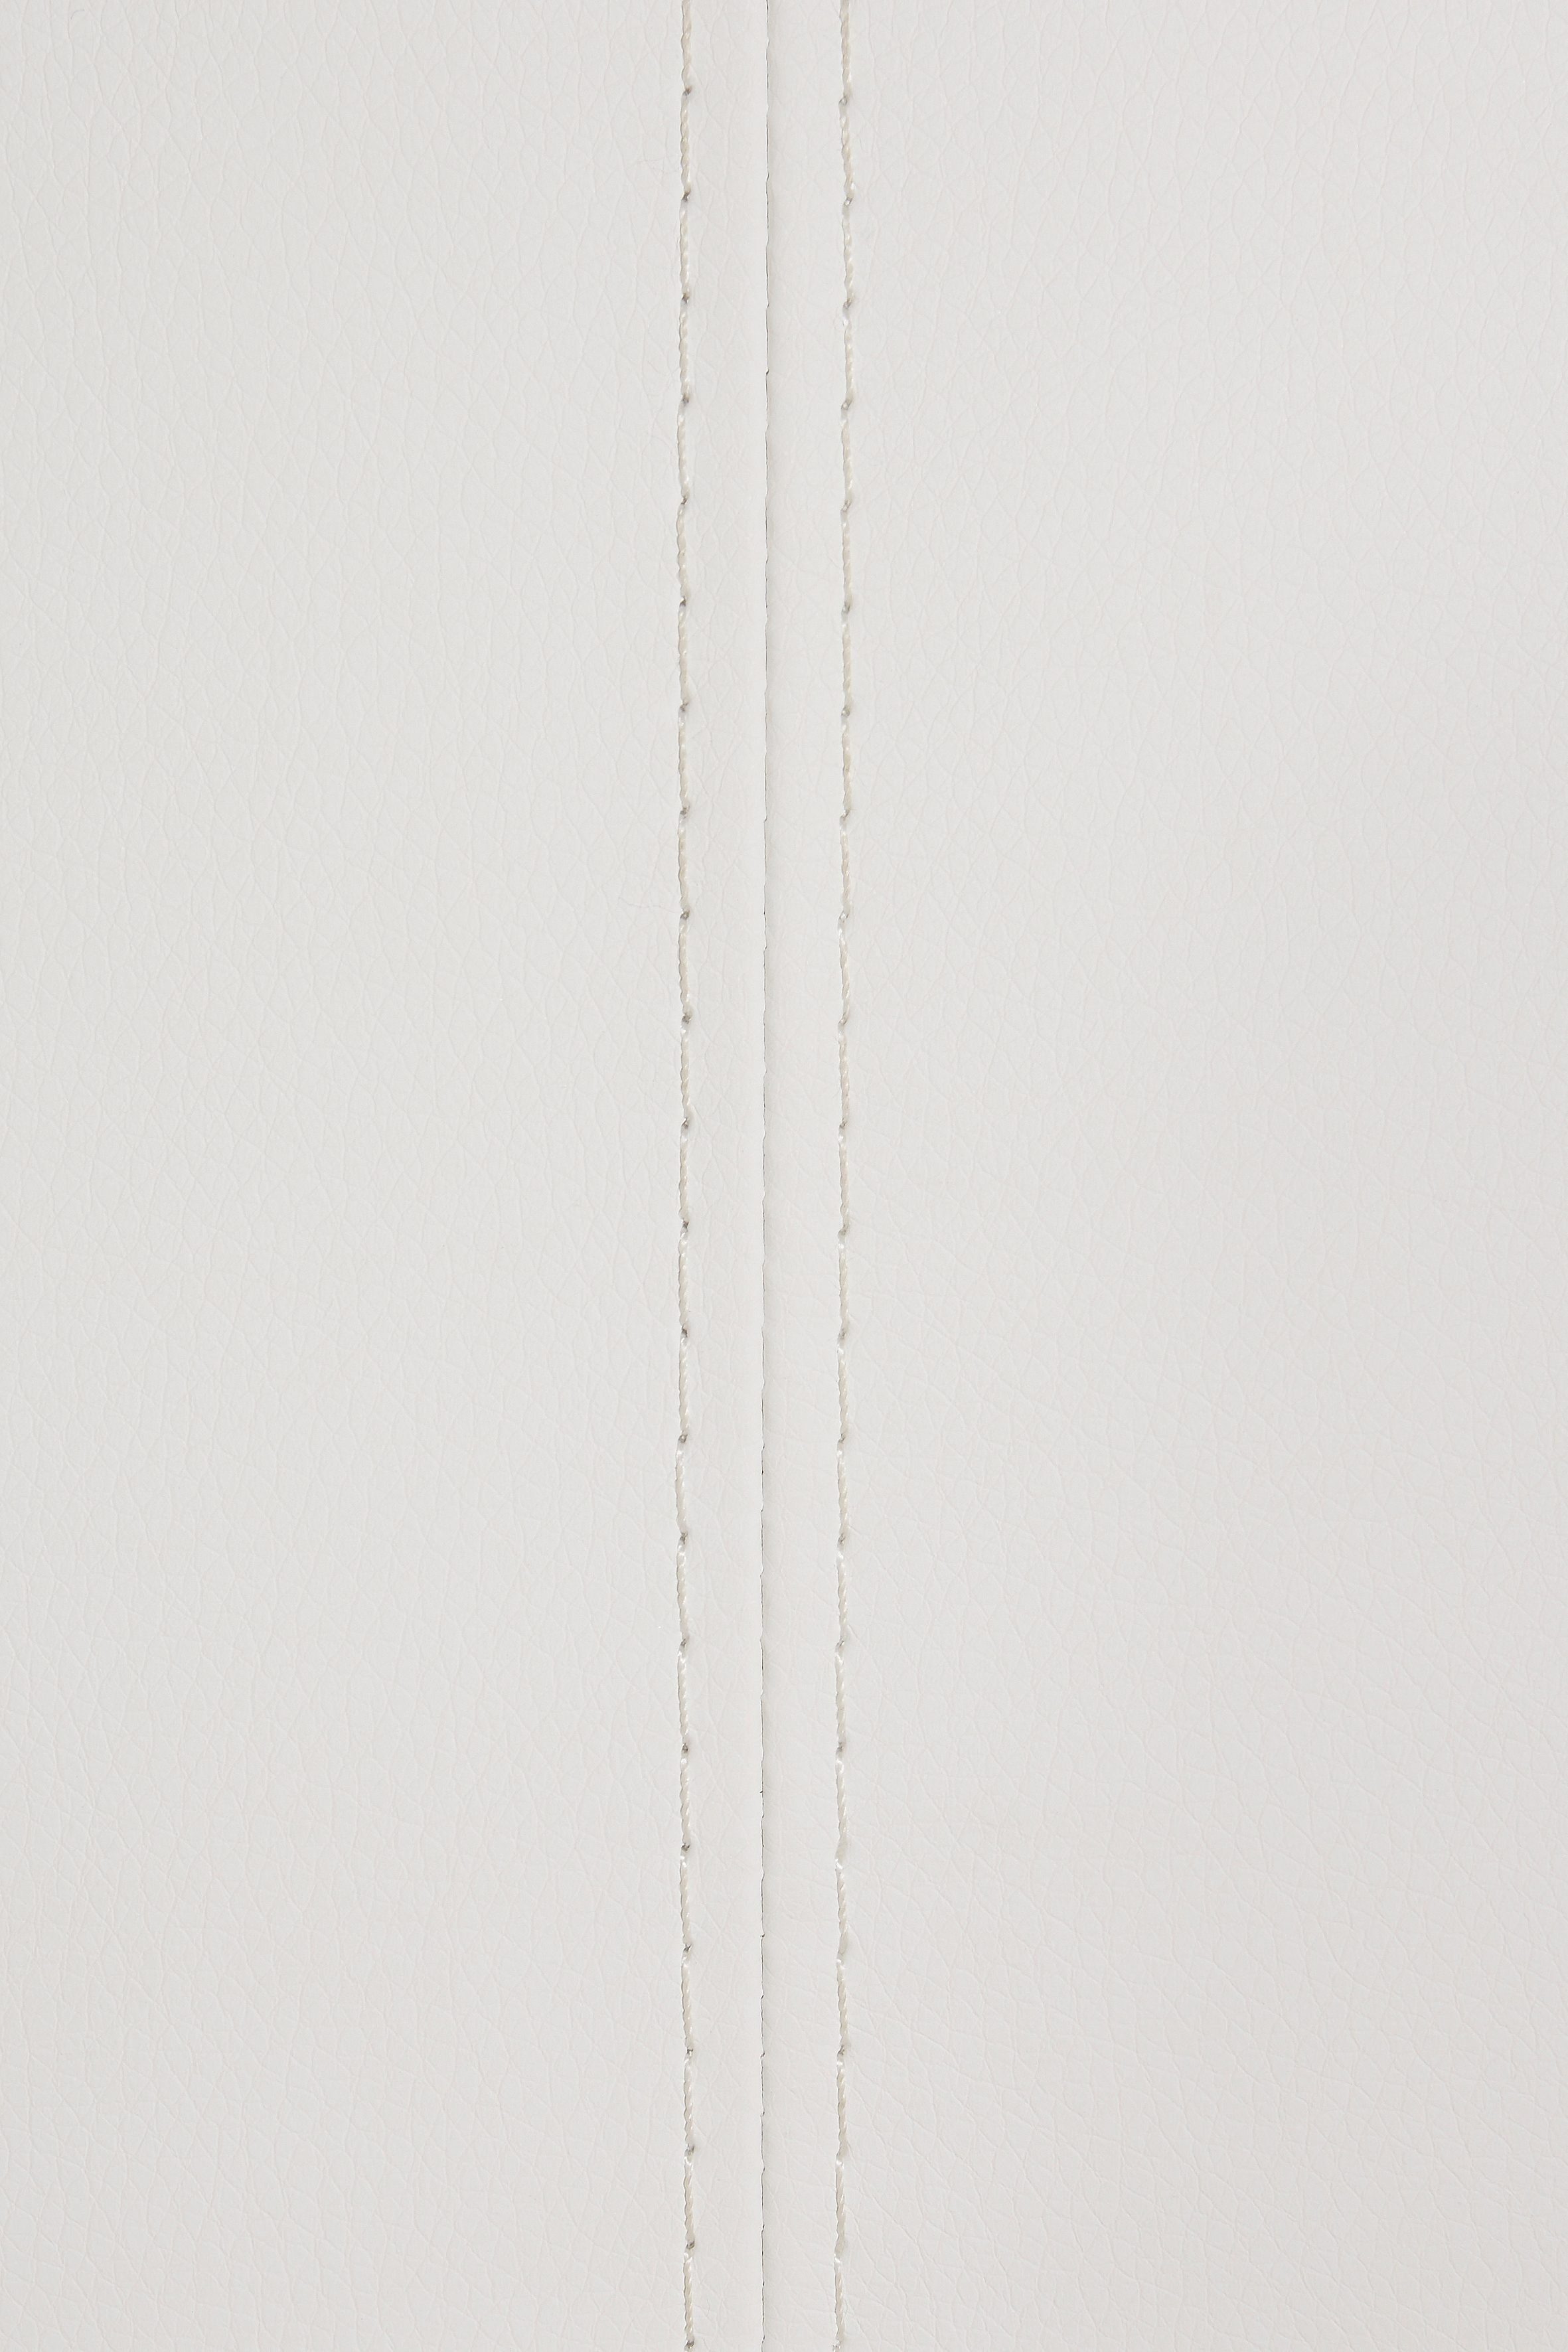 in MCA bis verschiedenen | Kunstleder, Arco furniture belastbar (1-St), weiß weiß kg, 280 Polsterbank Breiten